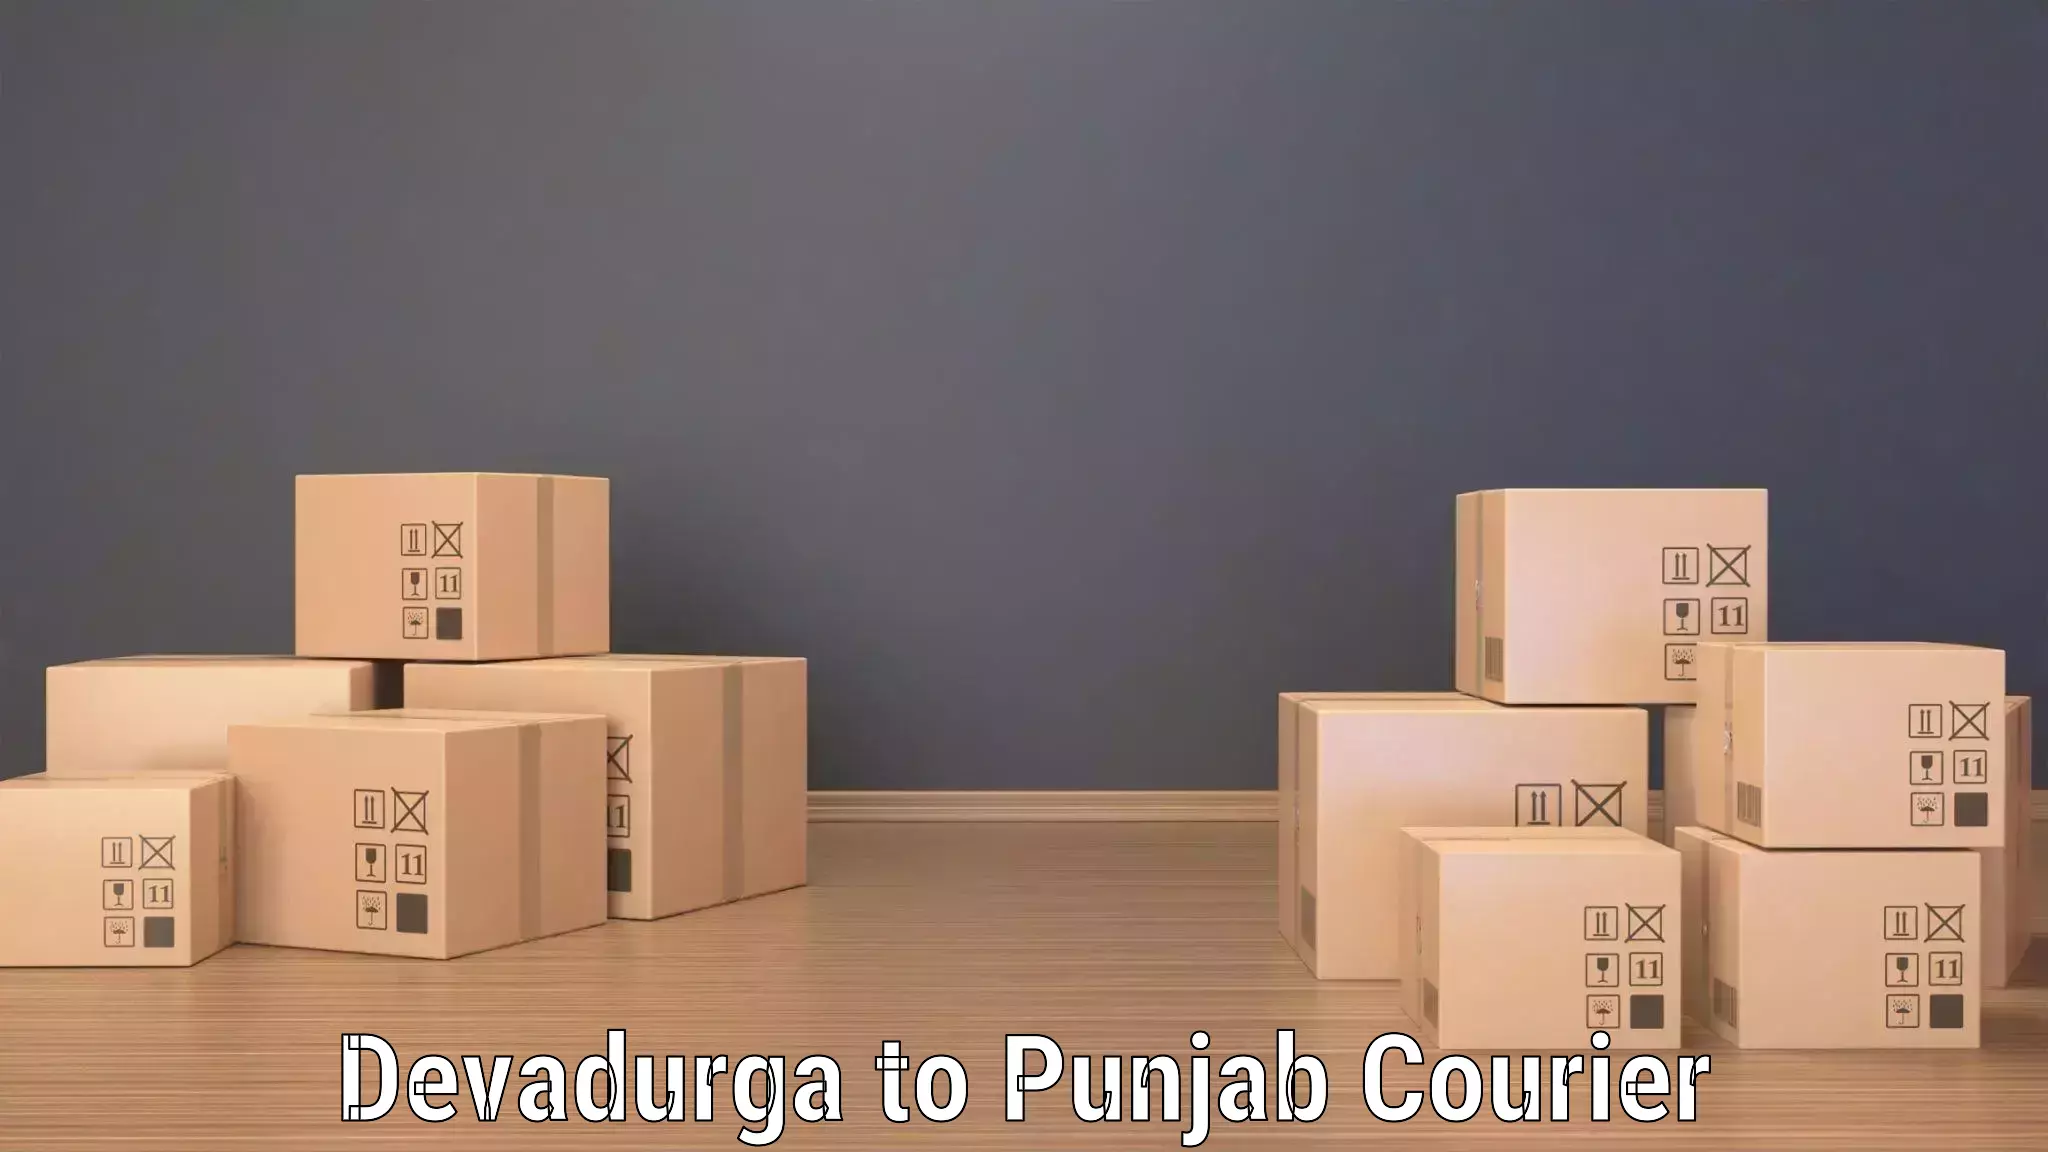 Express delivery capabilities Devadurga to Patiala